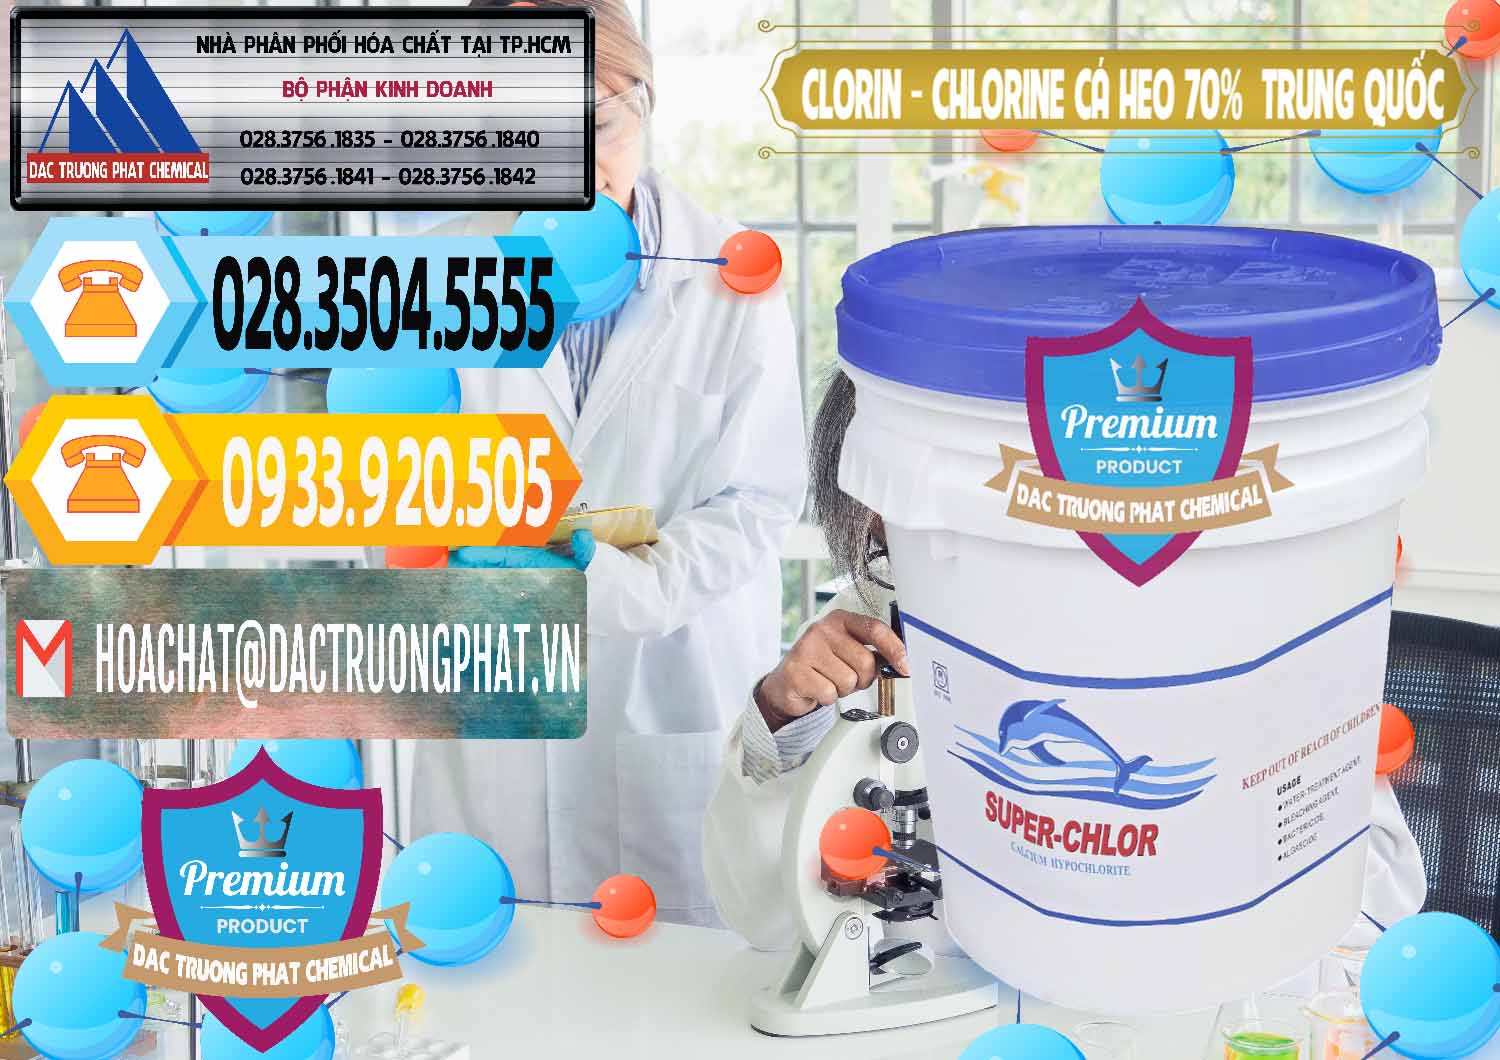 Cty kinh doanh ( bán ) Clorin - Chlorine Cá Heo 70% Super Chlor Nắp Xanh Trung Quốc China - 0209 - Công ty cung cấp - nhập khẩu hóa chất tại TP.HCM - hoachattayrua.net